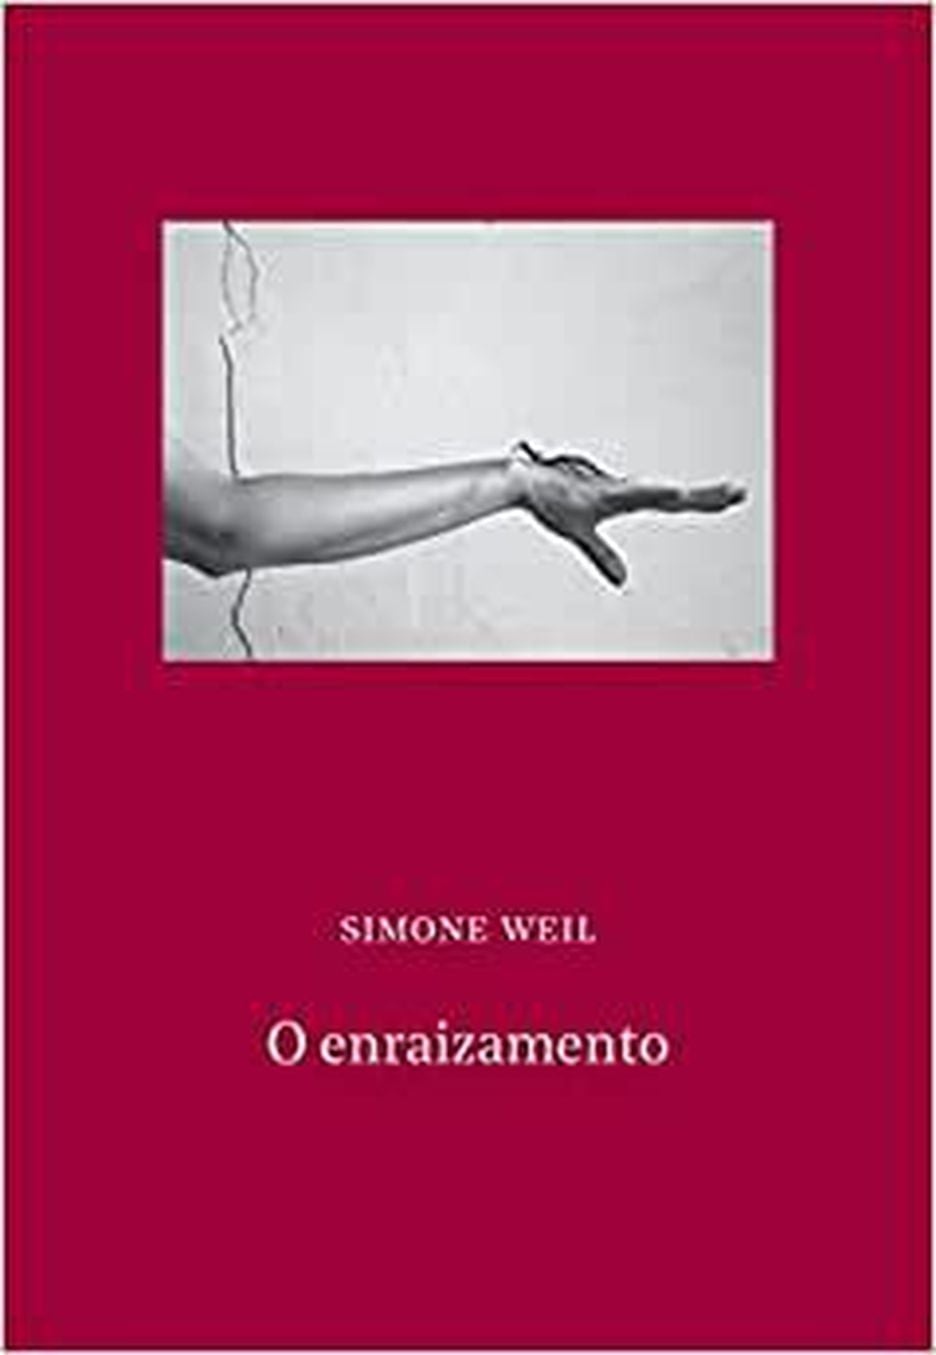 Capa do livro de Simone Weil, 'O Enraizamento', lançado pela Editora Âyiné